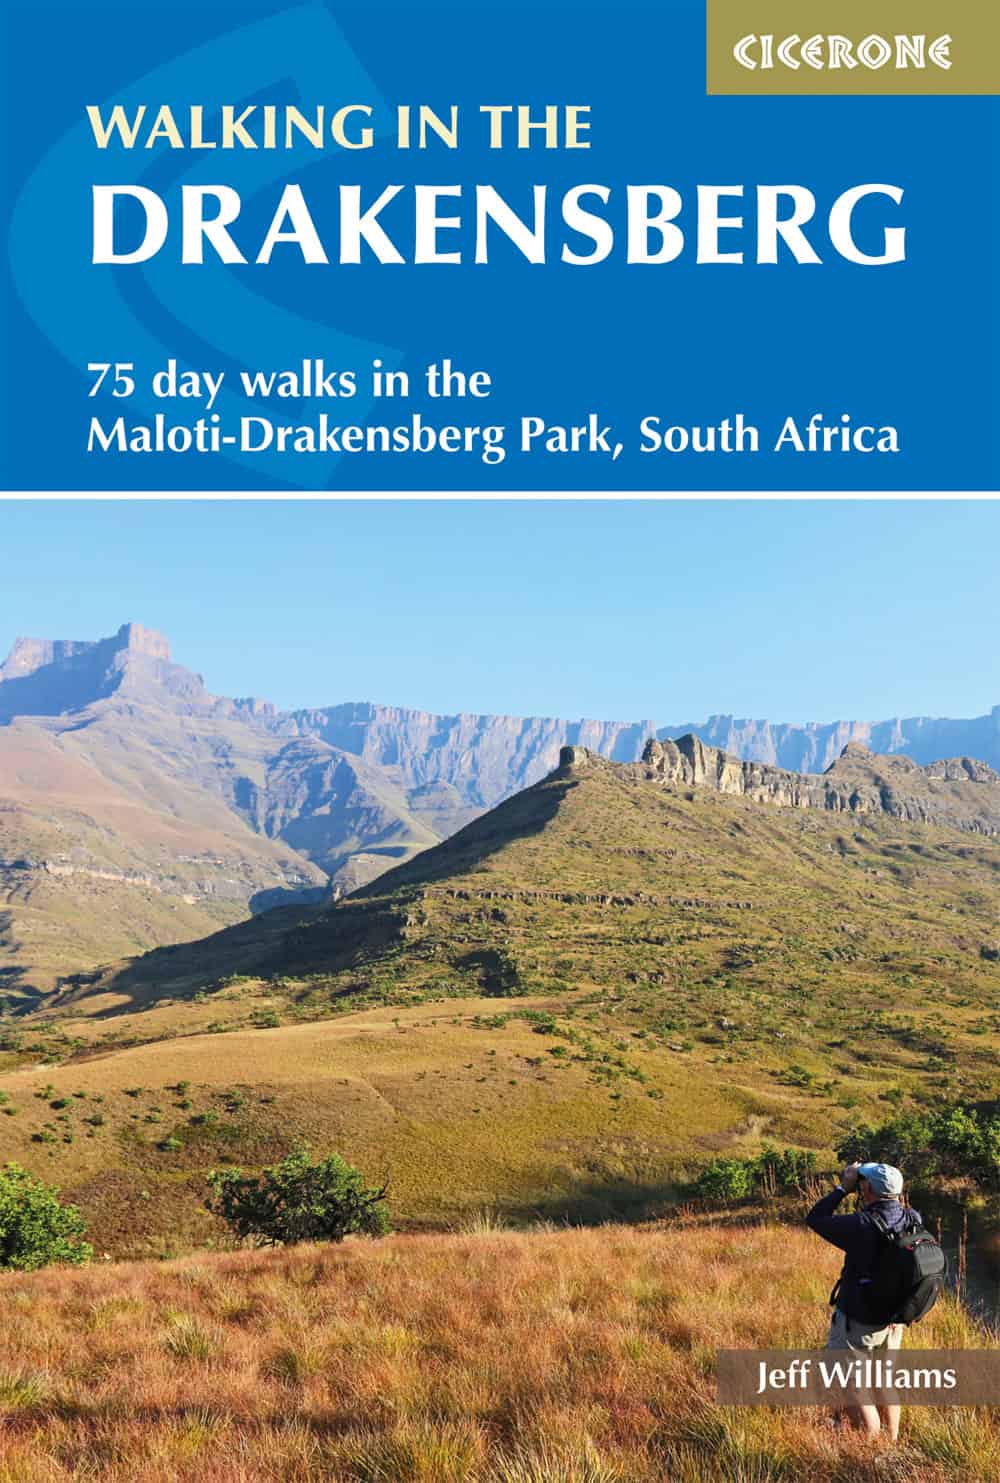 Drakensberg.jpg